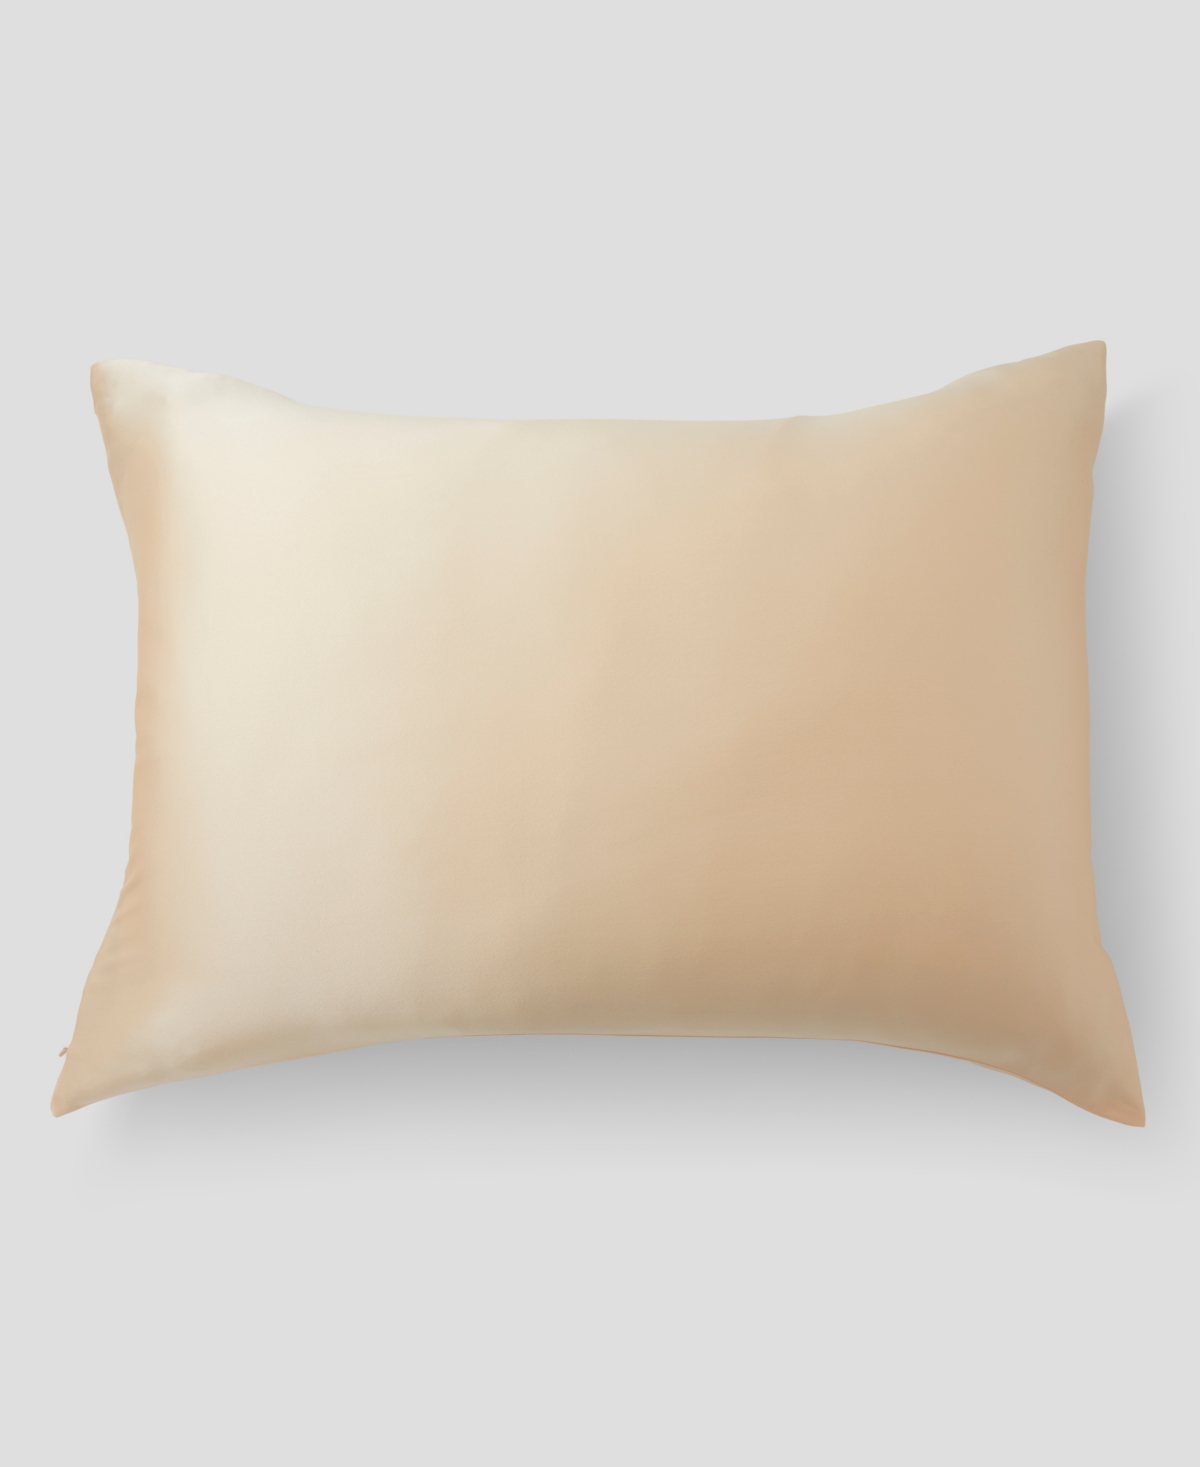 Casper Silk Pillowcase, Standard Bedding